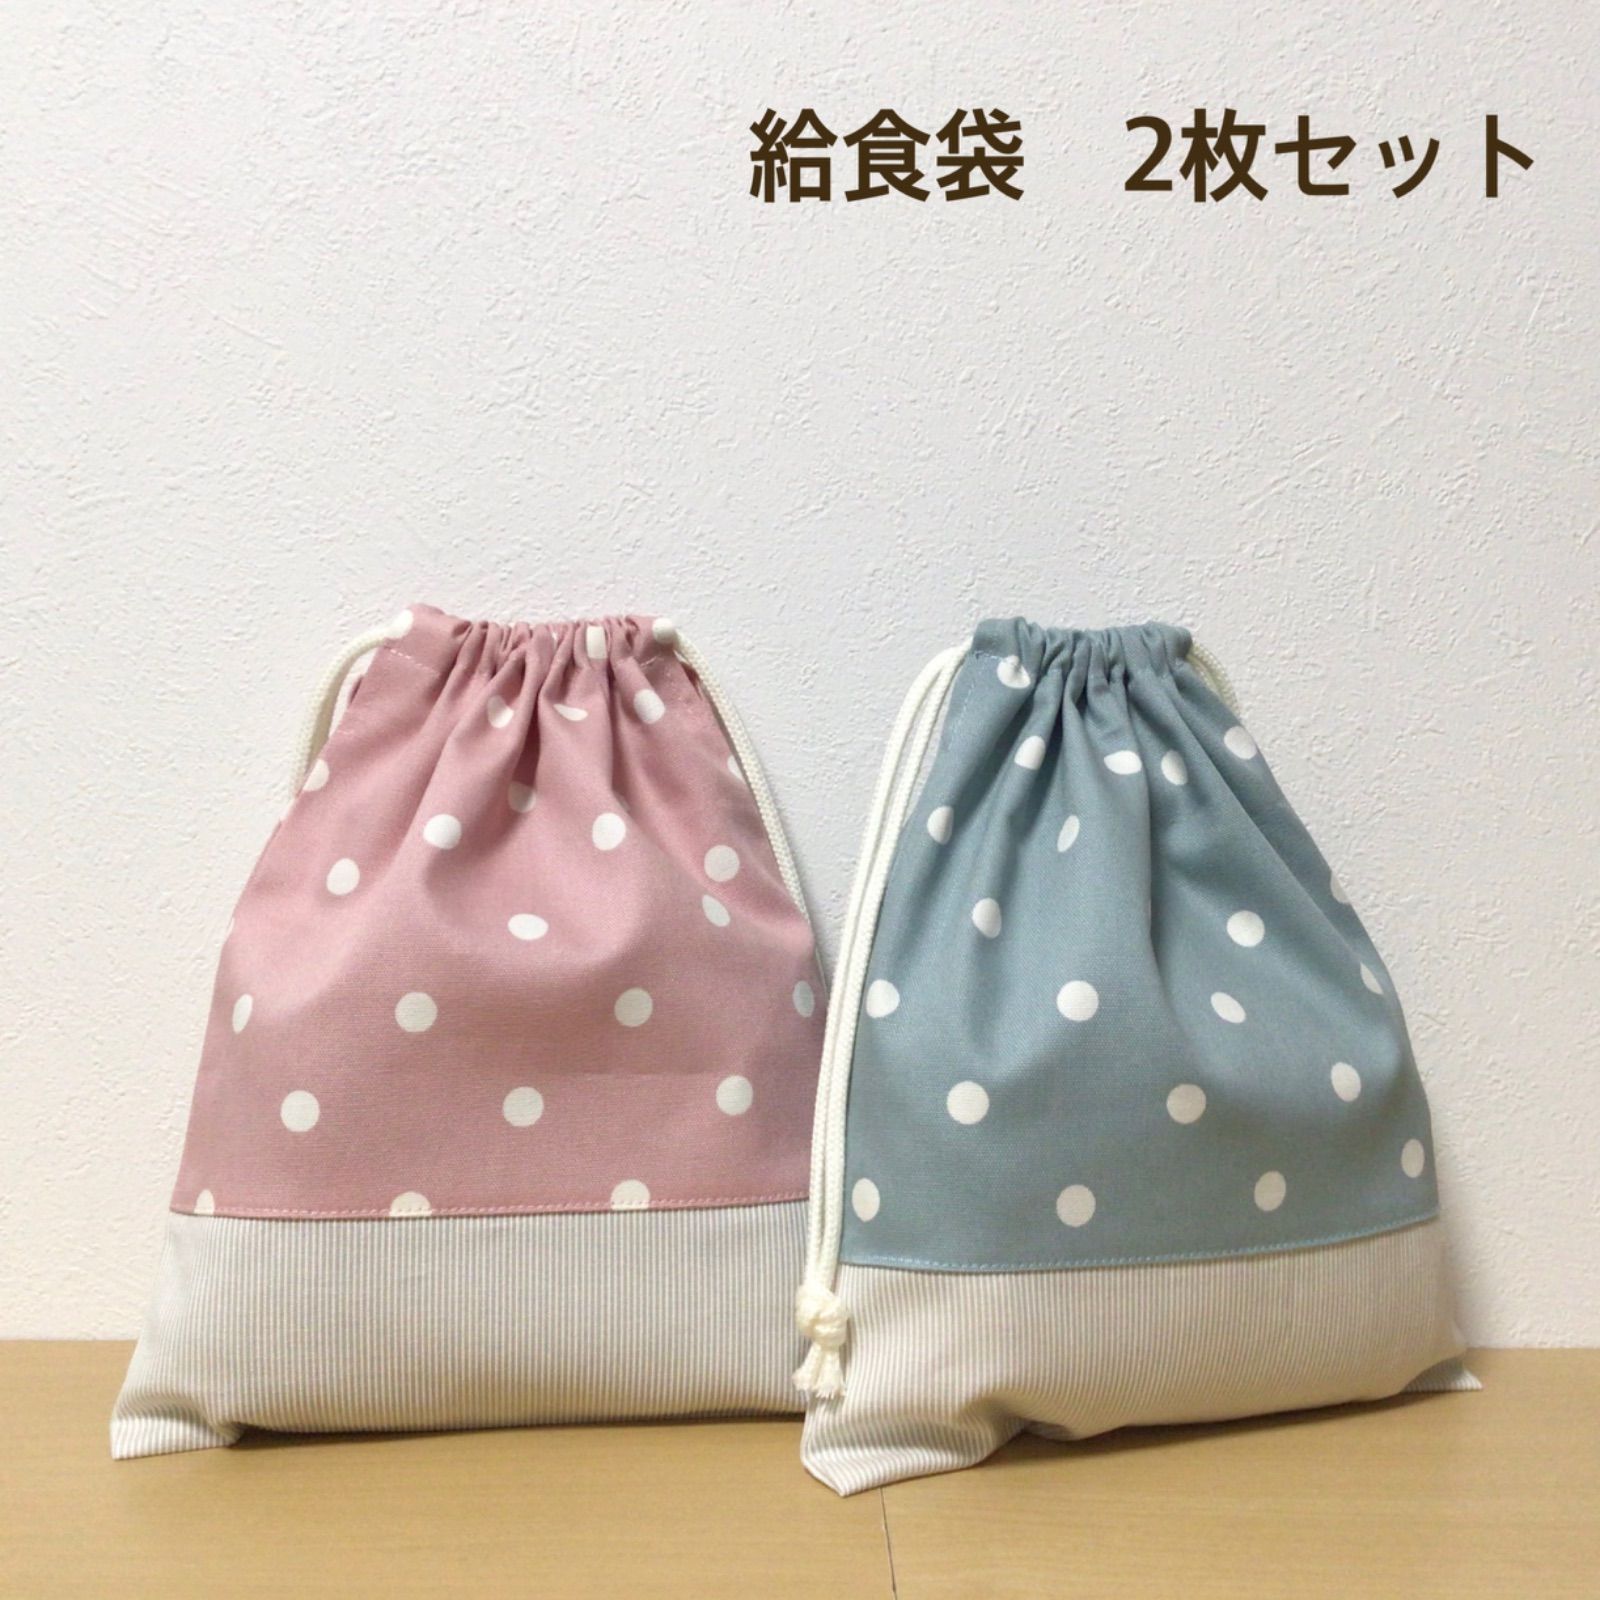 ハンドメイド☆ 給食袋 巾着 くすみピンク&ブルー×ドット 2枚セット